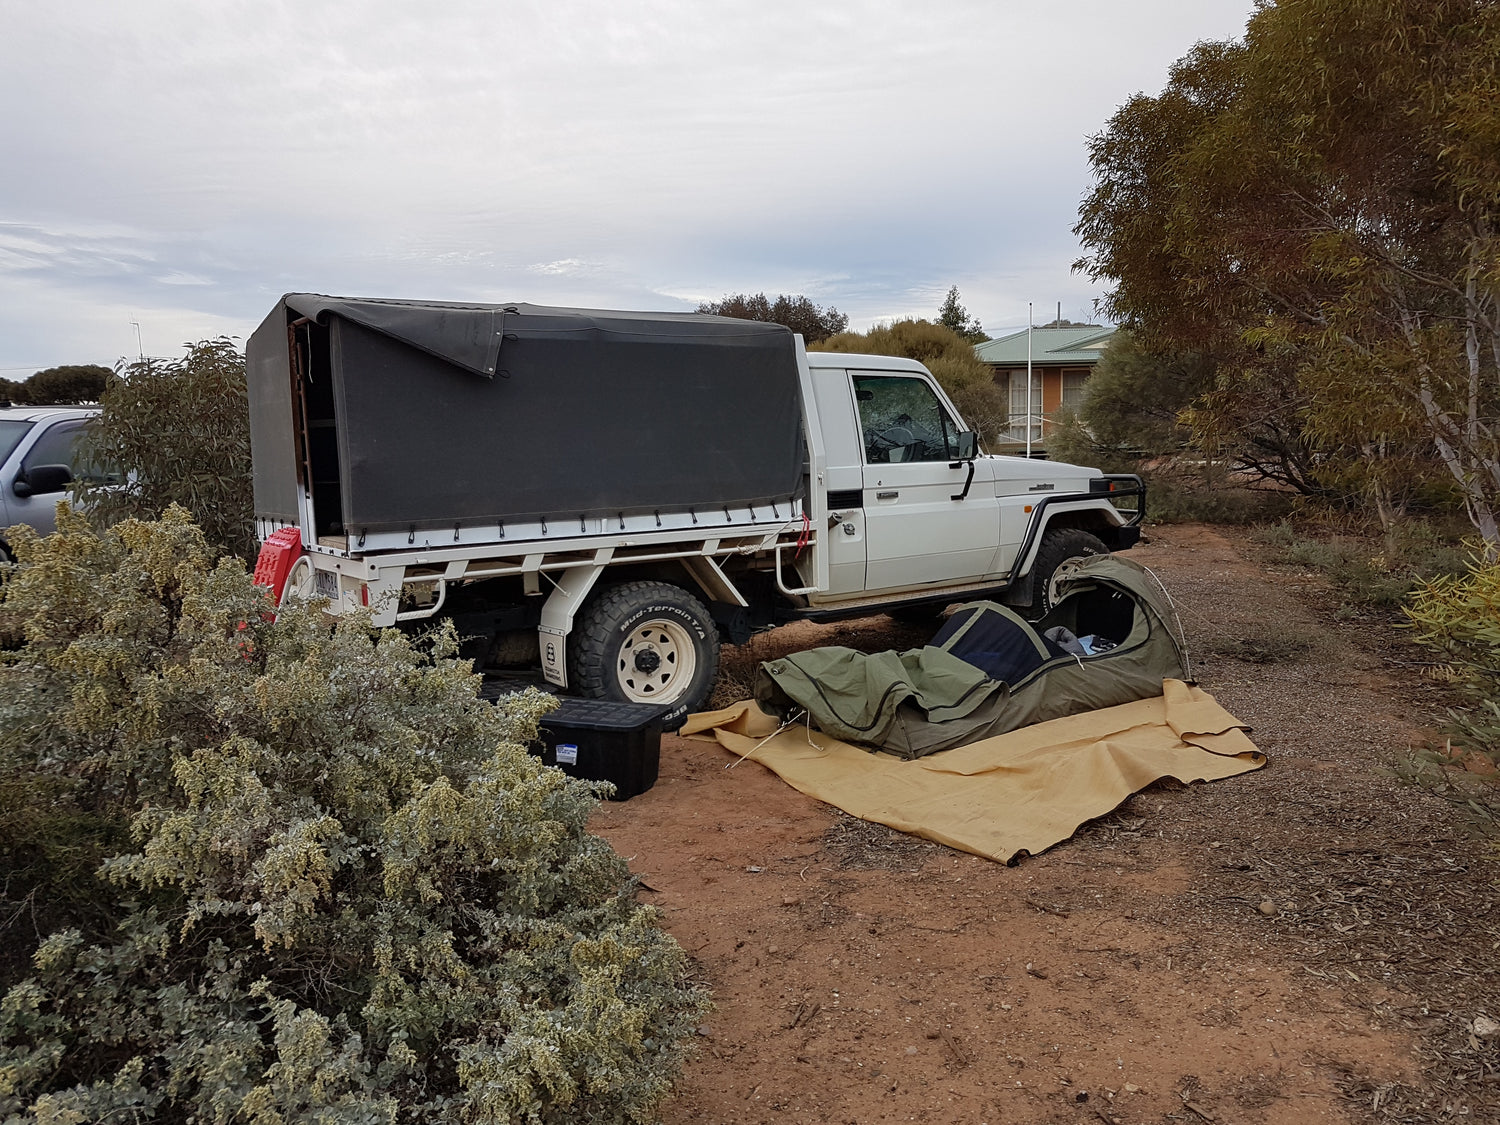 Camping in the Australian bush - Micks Gone Bush